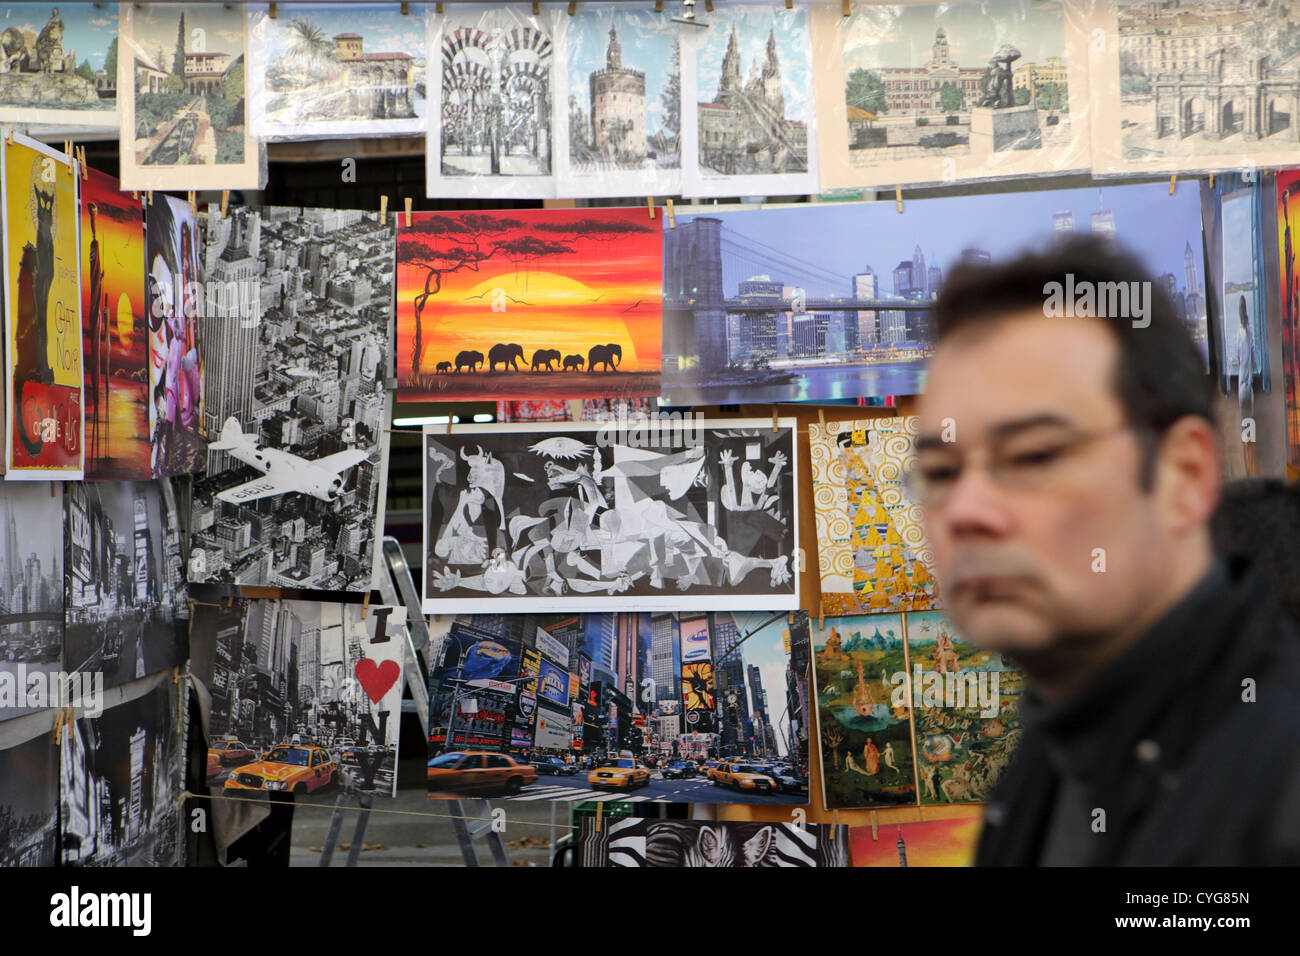 Domingo El Rastro flea market street, reproducción de arte trabajar imágenes con copyright para la venta, Madrid, España Foto de stock